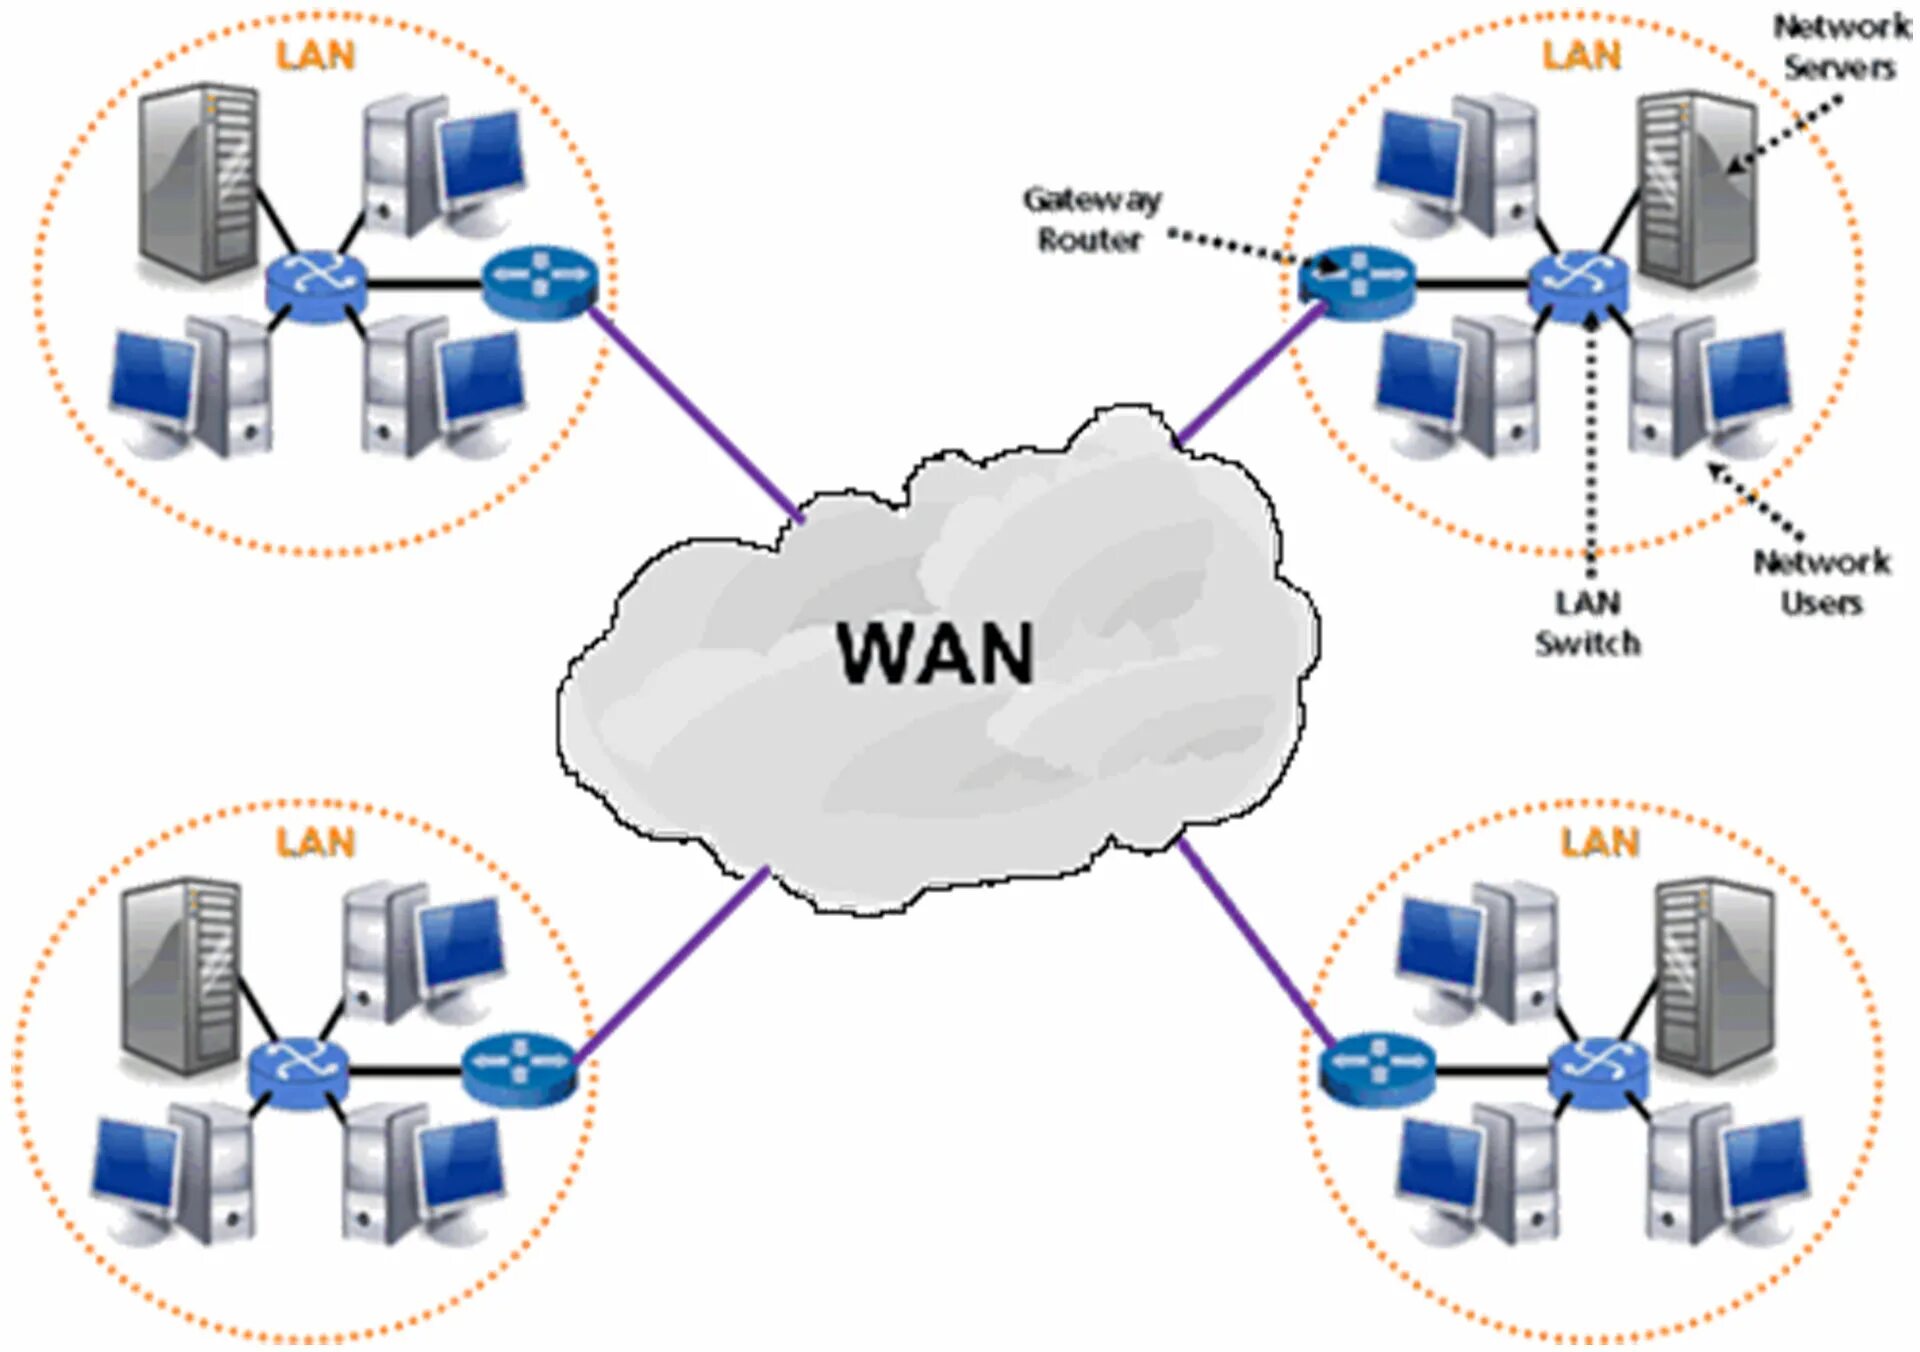 Wan интернет. Локальная сеть local area Network Wan. Глобальная сеть (Wan). Wan (wide area Network). Глобальные сети (wide area Network).